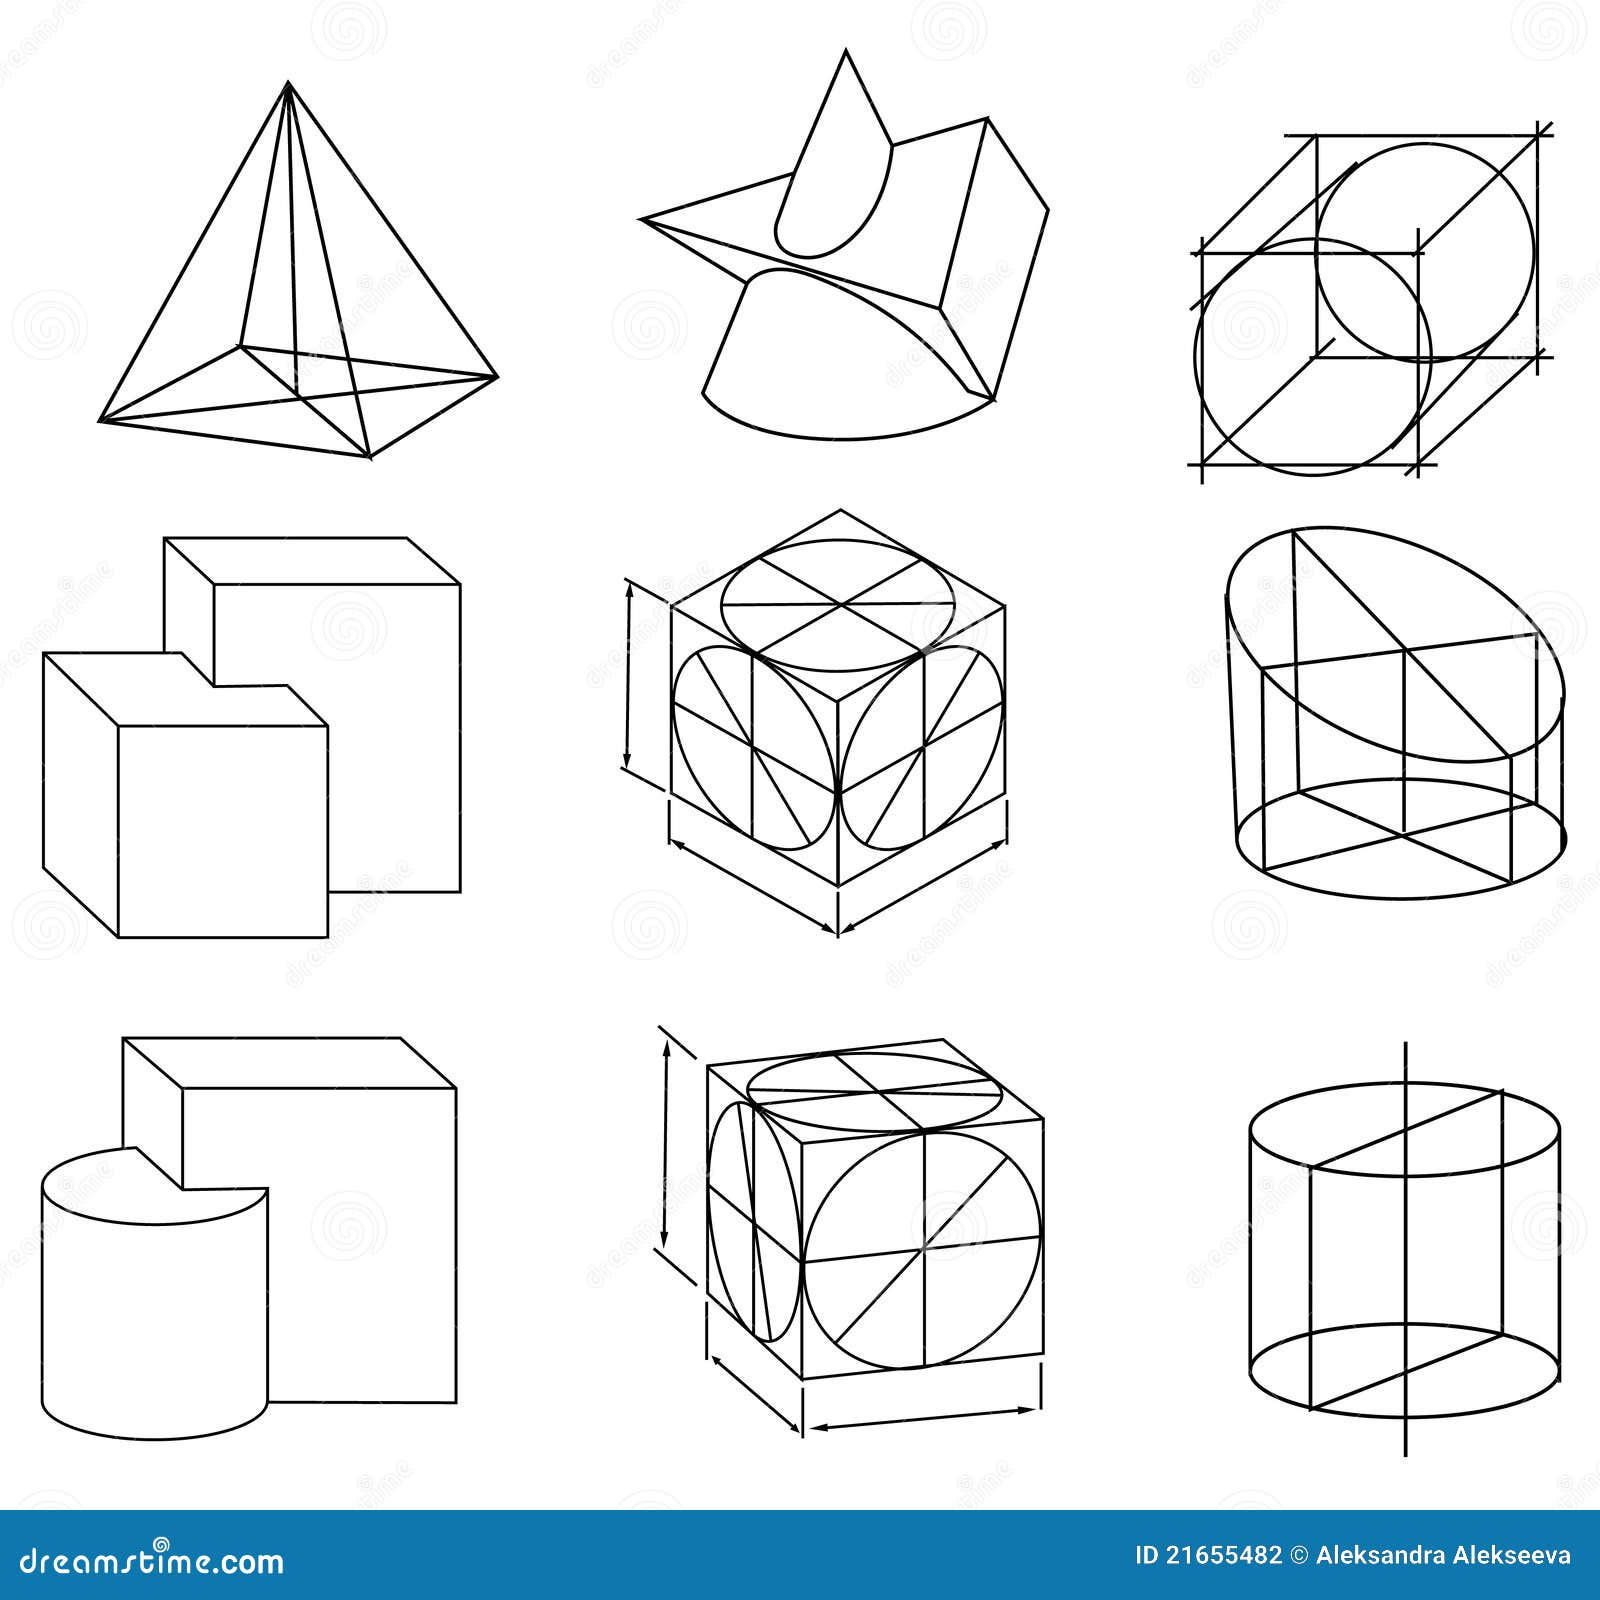 Трансформация простых геометрических форм